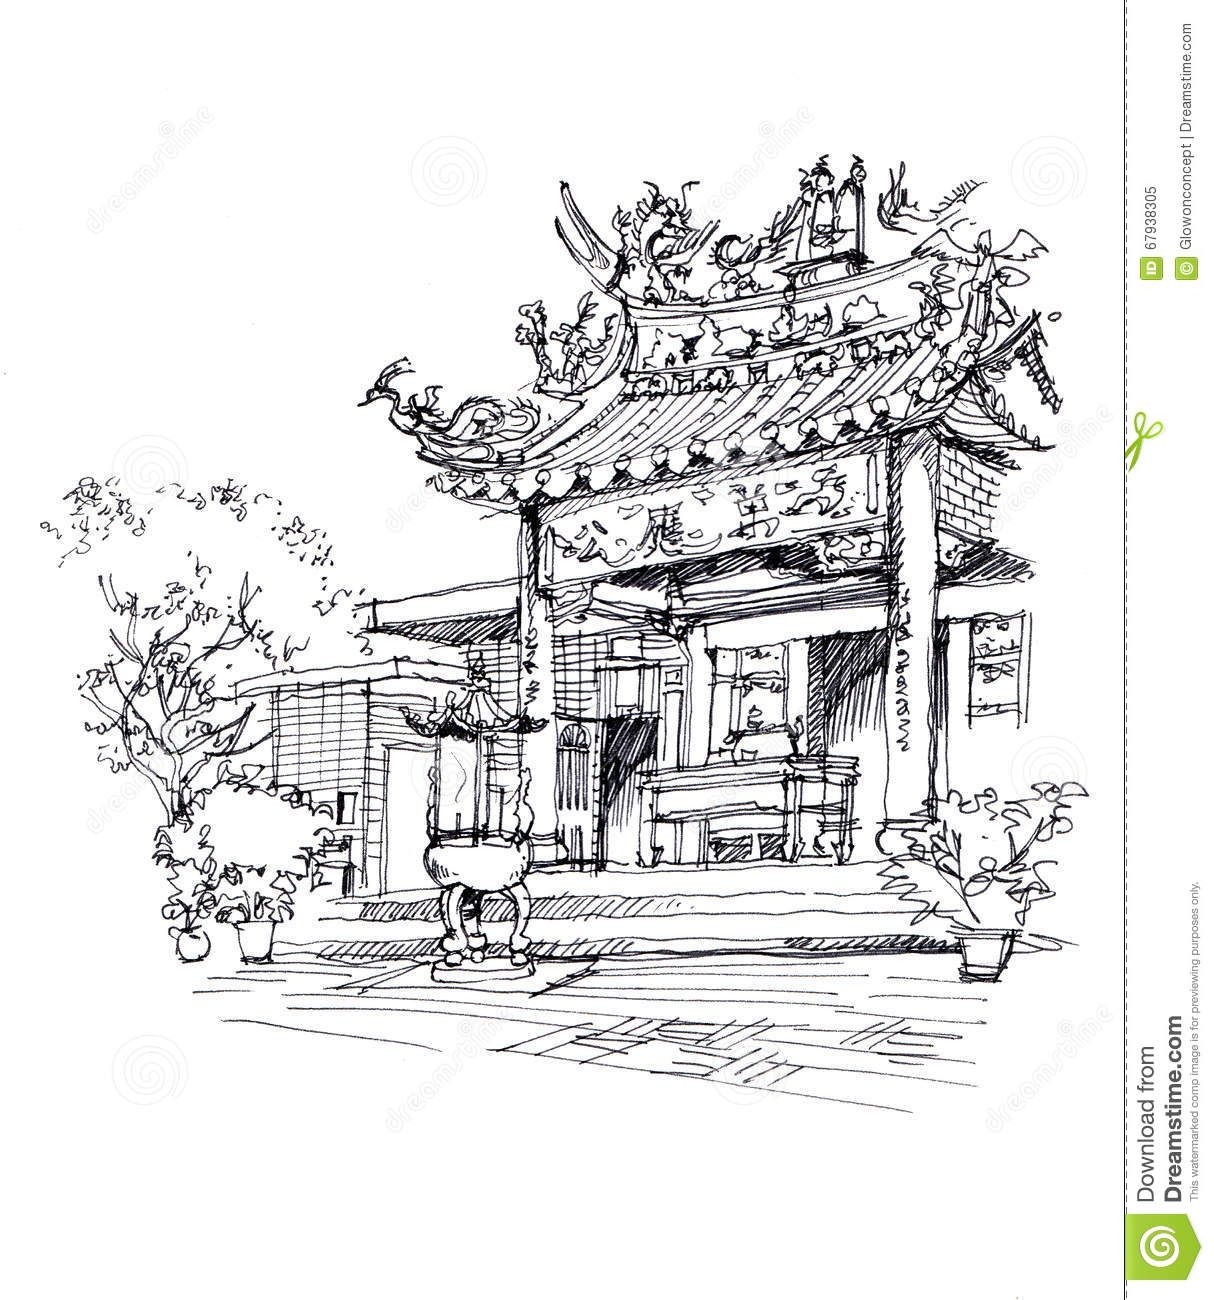 Архитектура в японском стиле рисунок